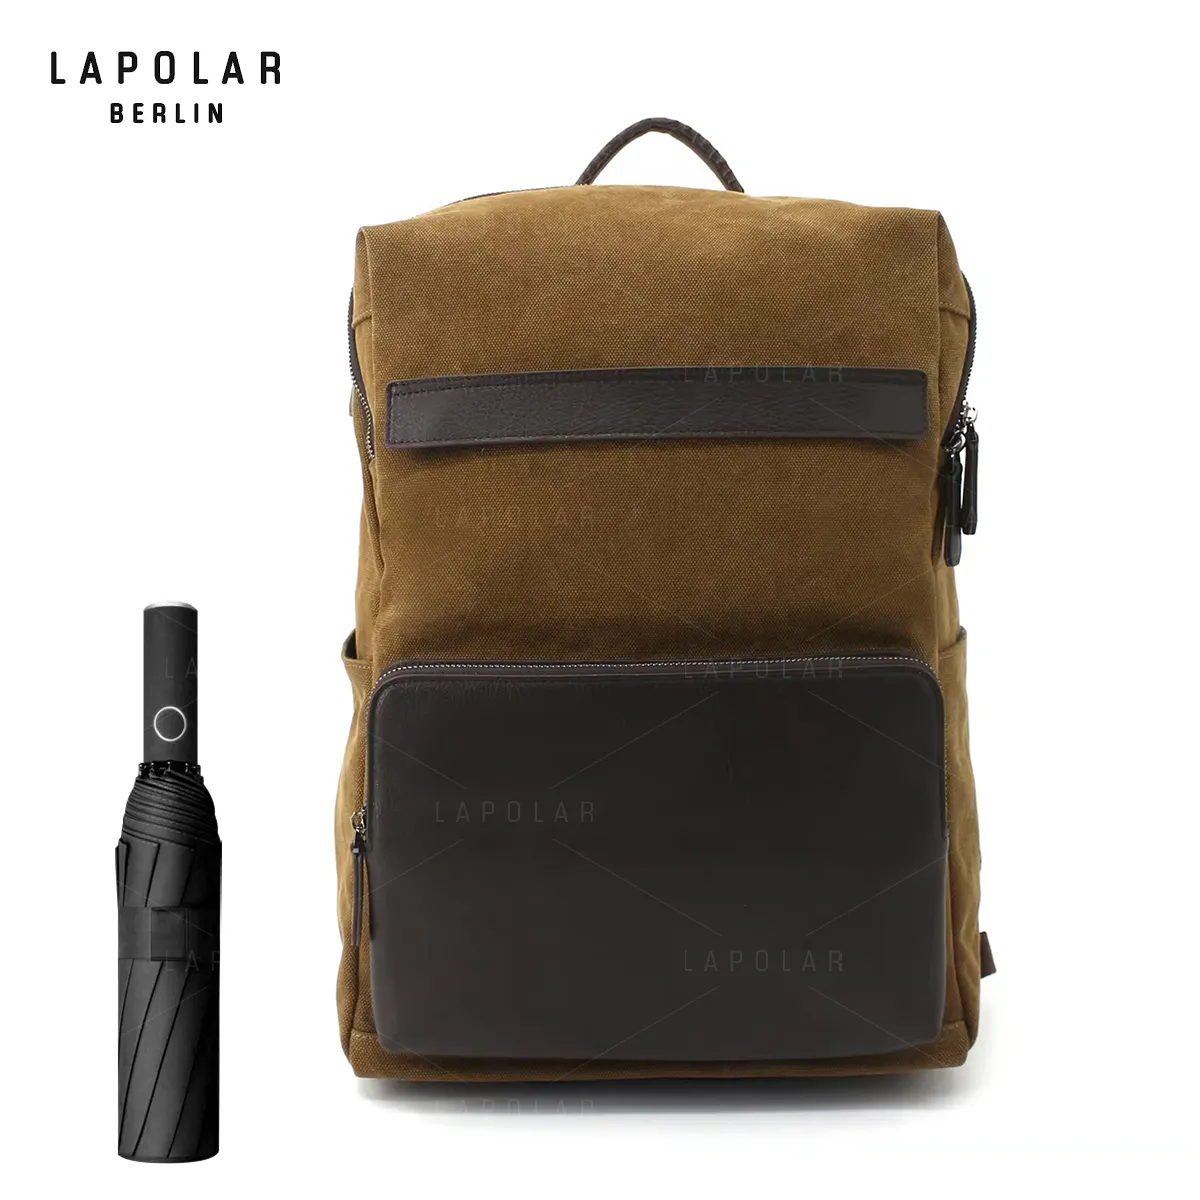 LAPOLAR su geçirmez iş geri paketi erkekler için toptan özel logo ofis laptop çantası sırt çantası retro sırt çantası